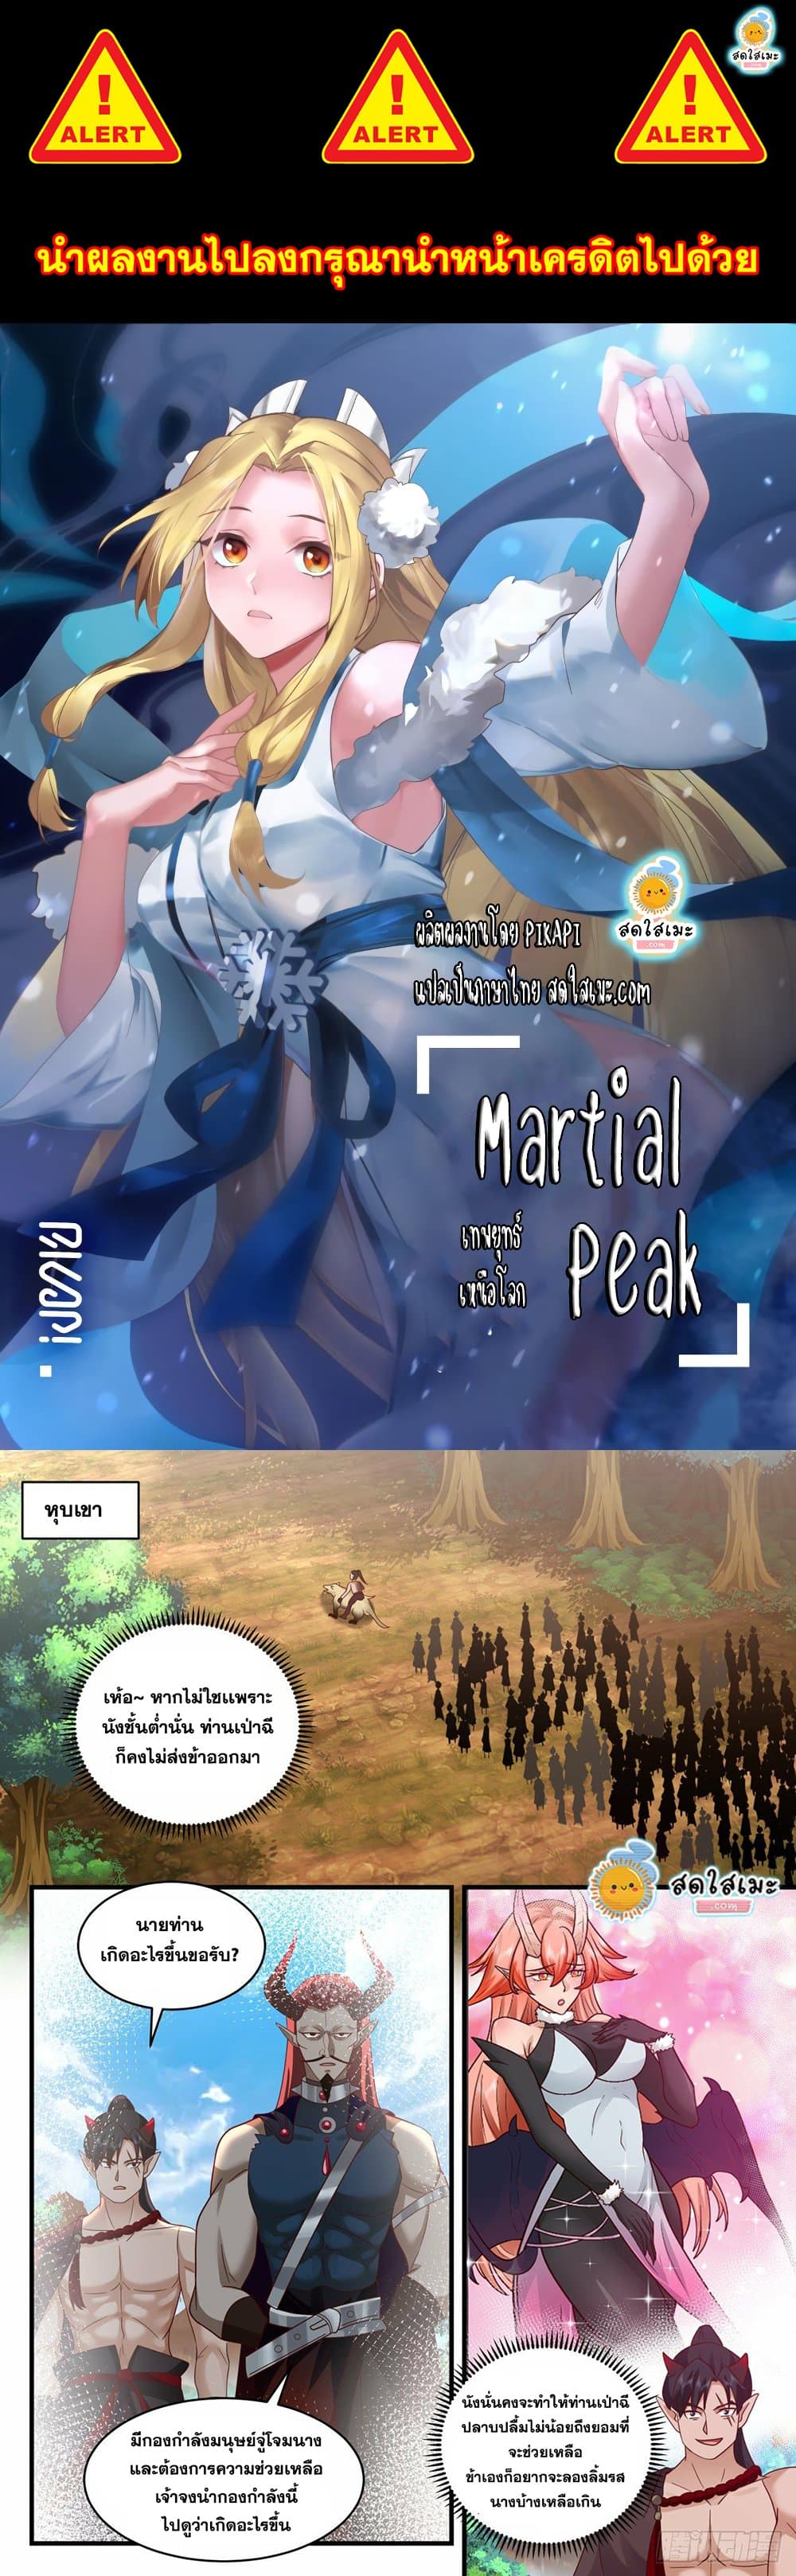 Martial Peak2033 01